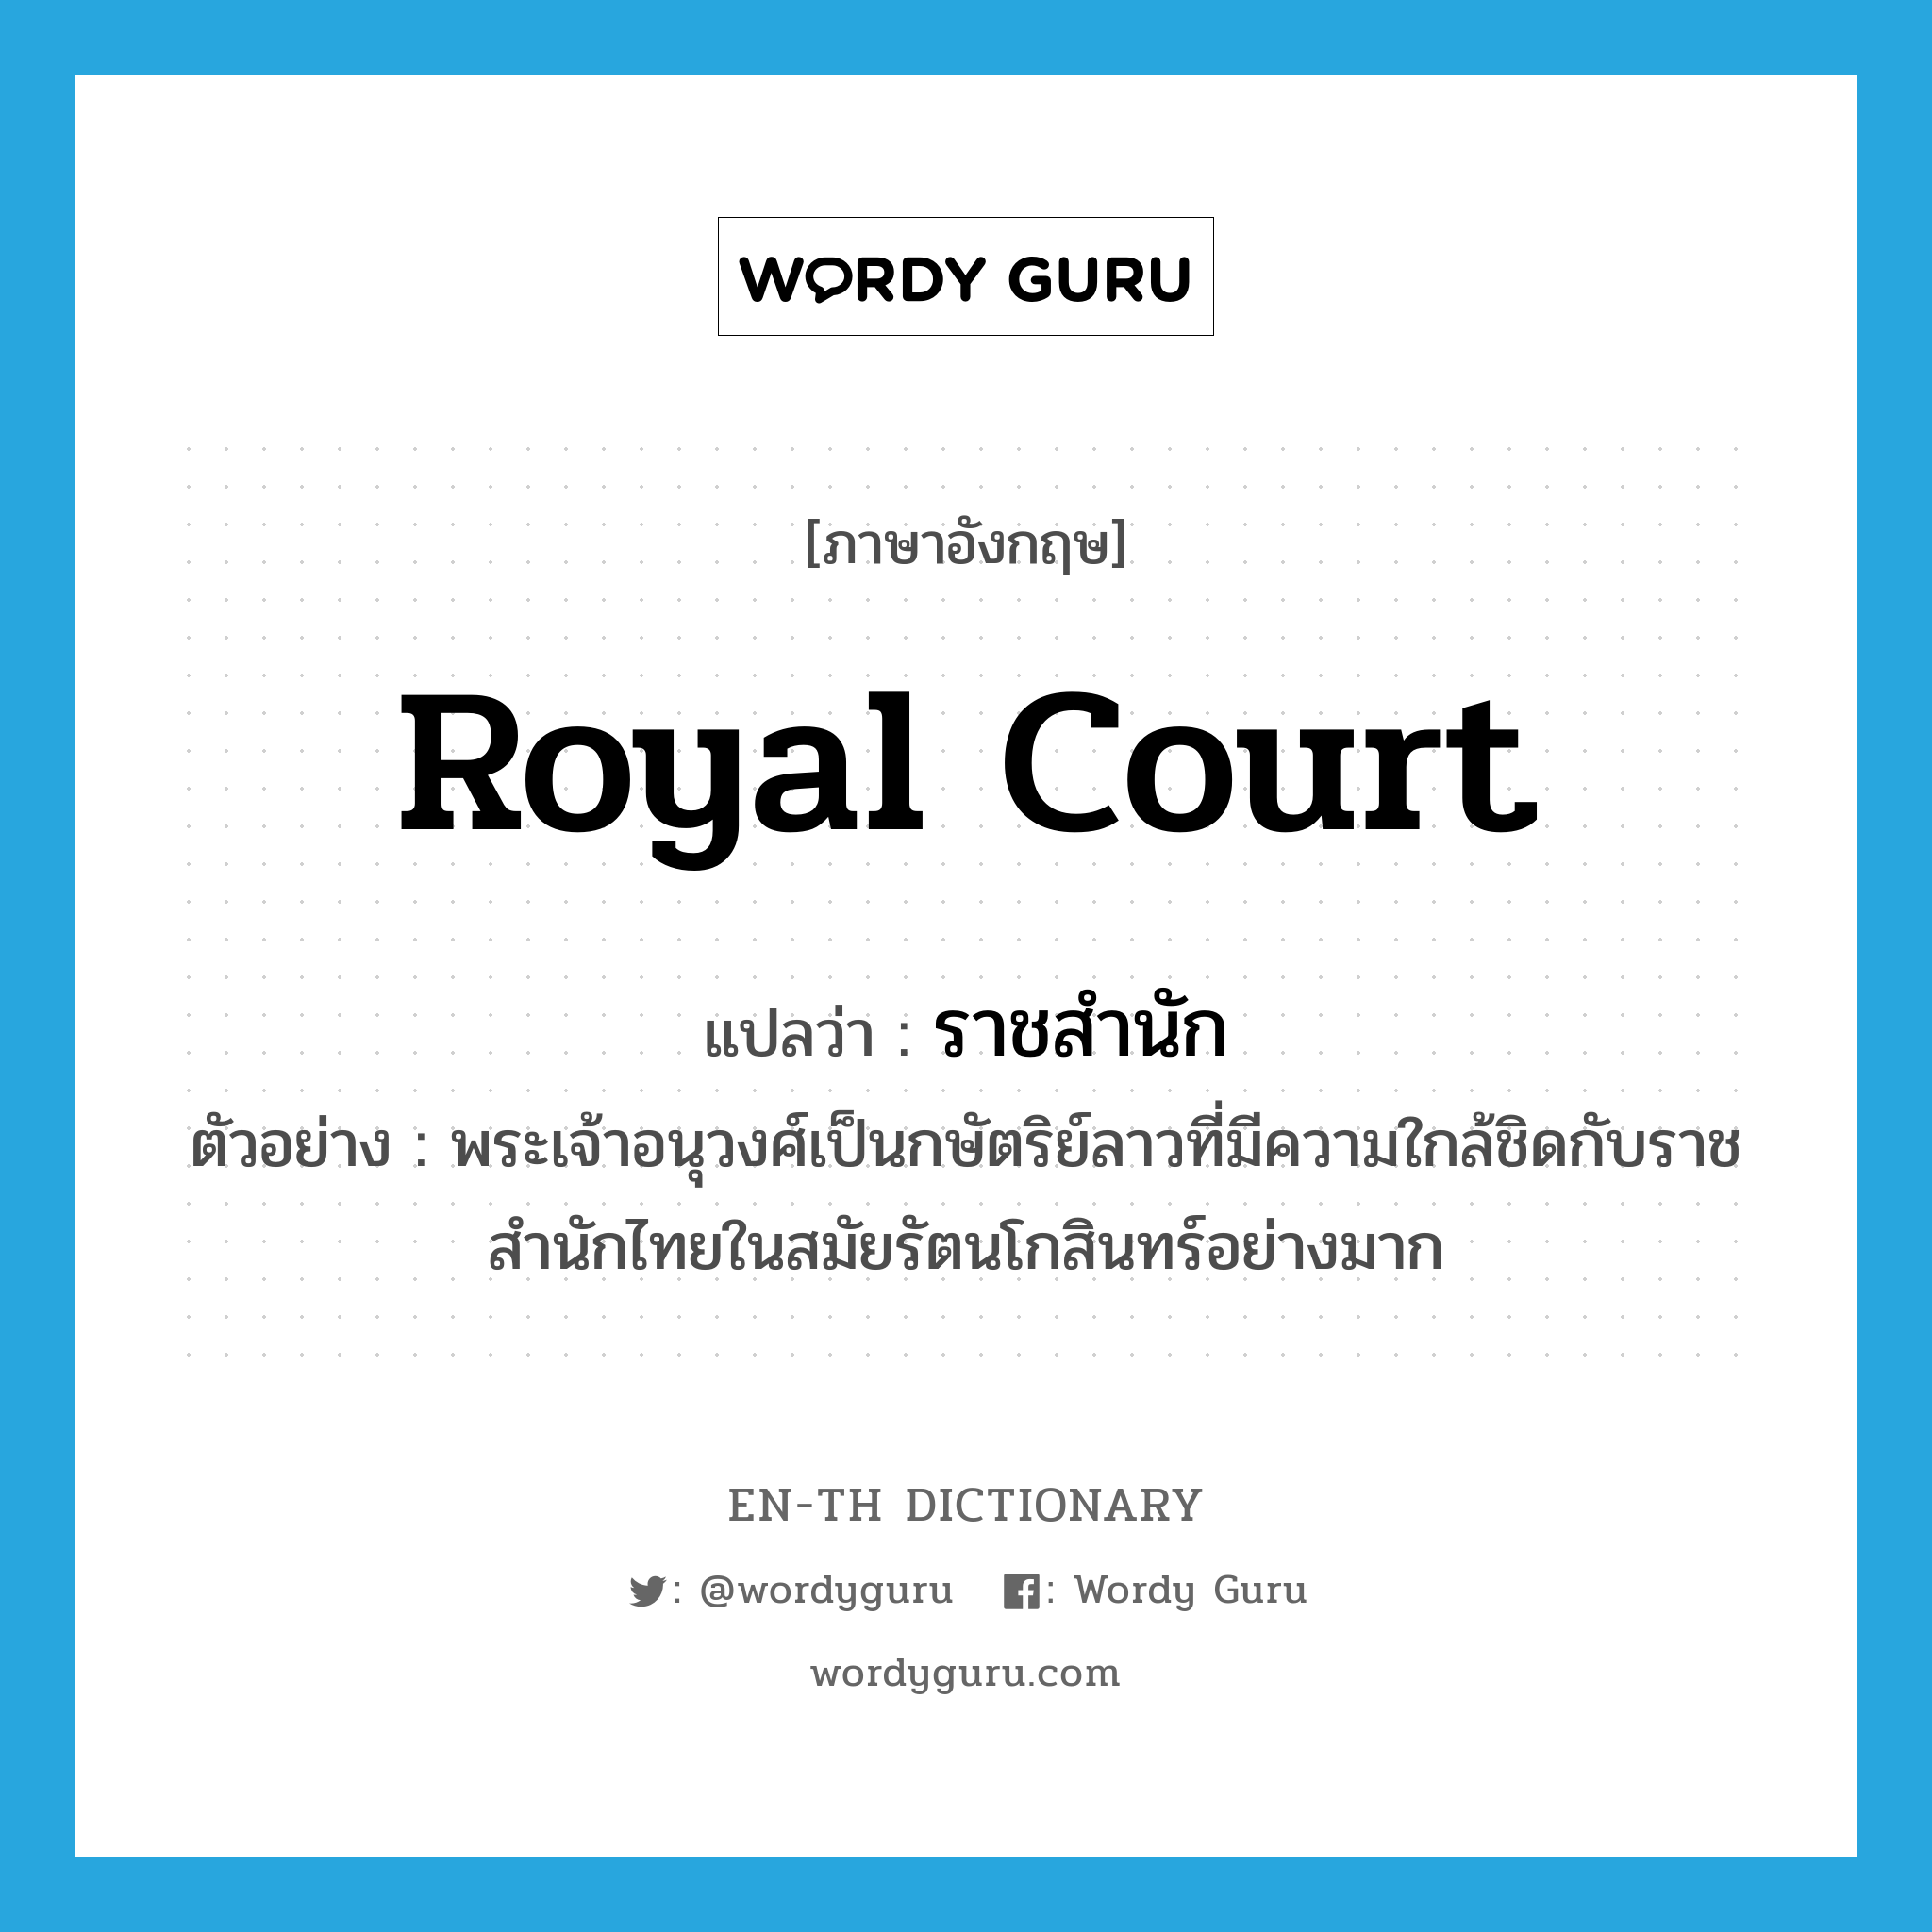 royal court แปลว่า?, คำศัพท์ภาษาอังกฤษ royal court แปลว่า ราชสำนัก ประเภท N ตัวอย่าง พระเจ้าอนุวงศ์เป็นกษัตริย์ลาวที่มีความใกล้ชิดกับราชสำนักไทยในสมัยรัตนโกสินทร์อย่างมาก หมวด N